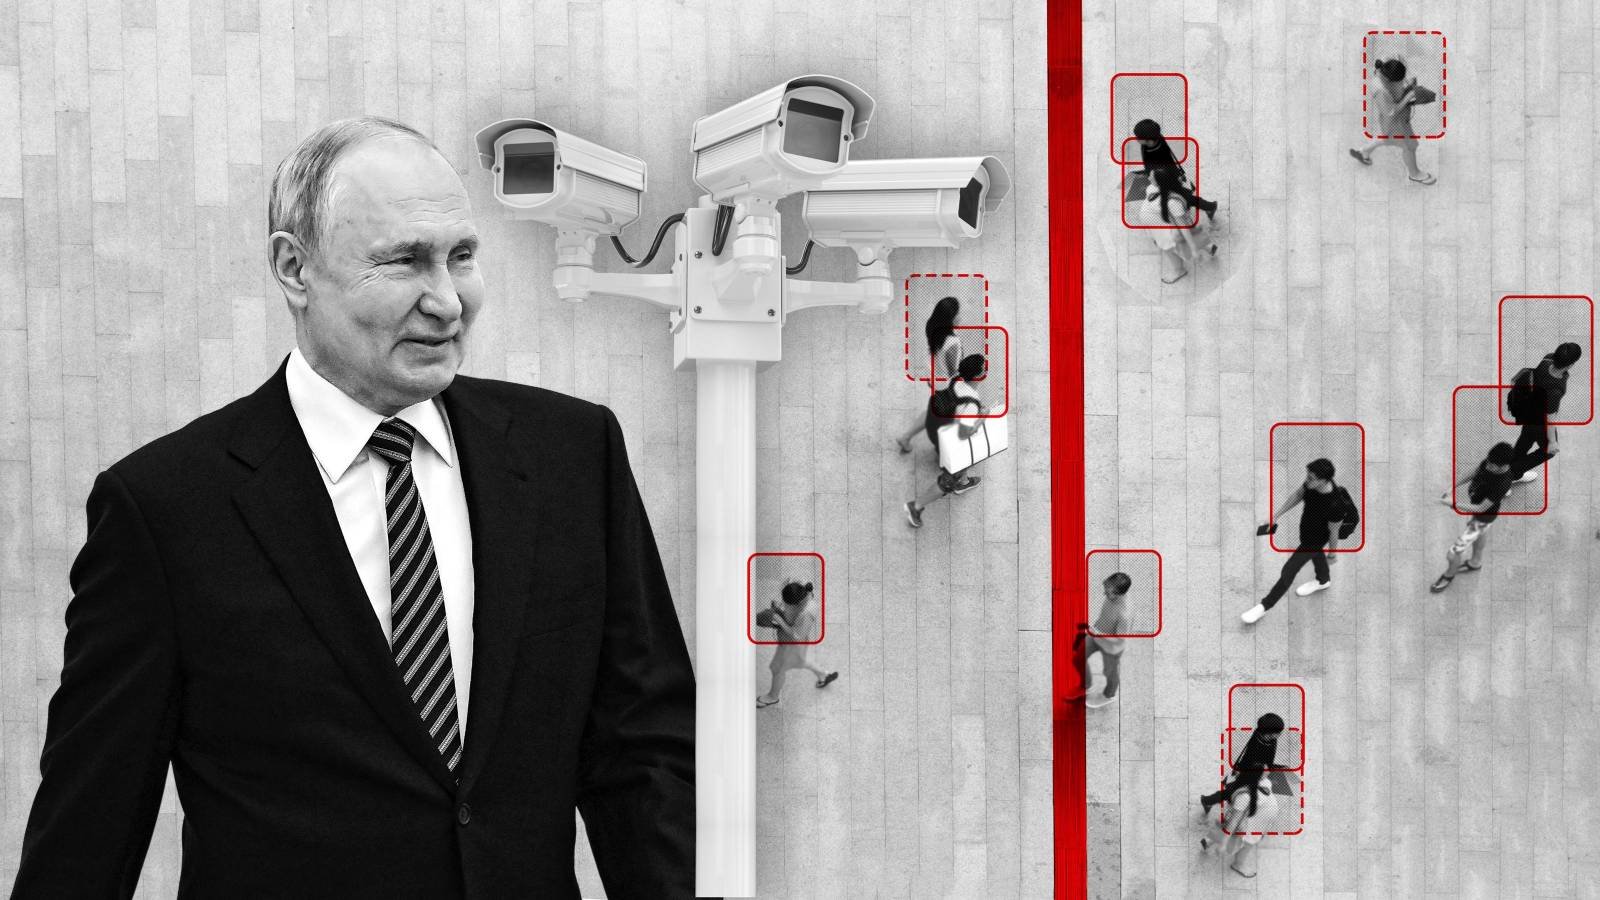 Утечка документов: Владимир Путин выделил десятки миллионов евро на создание мощной системы слежения за людьми. Фирмы-партнеры программы спокойно действуют в Европе.